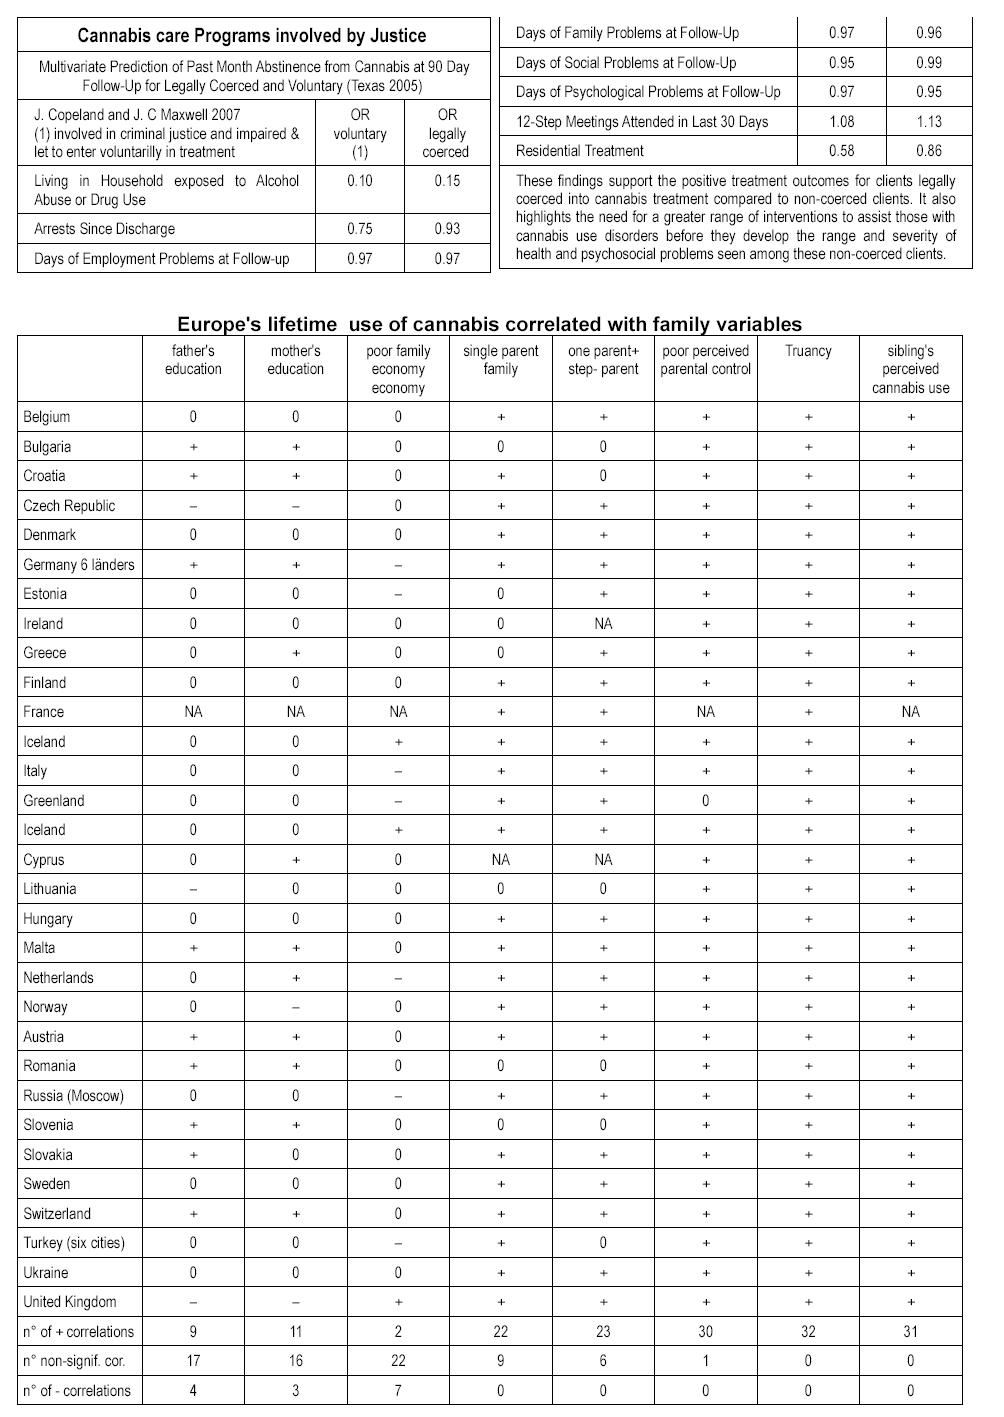 tables: cannabiscofactorsdata